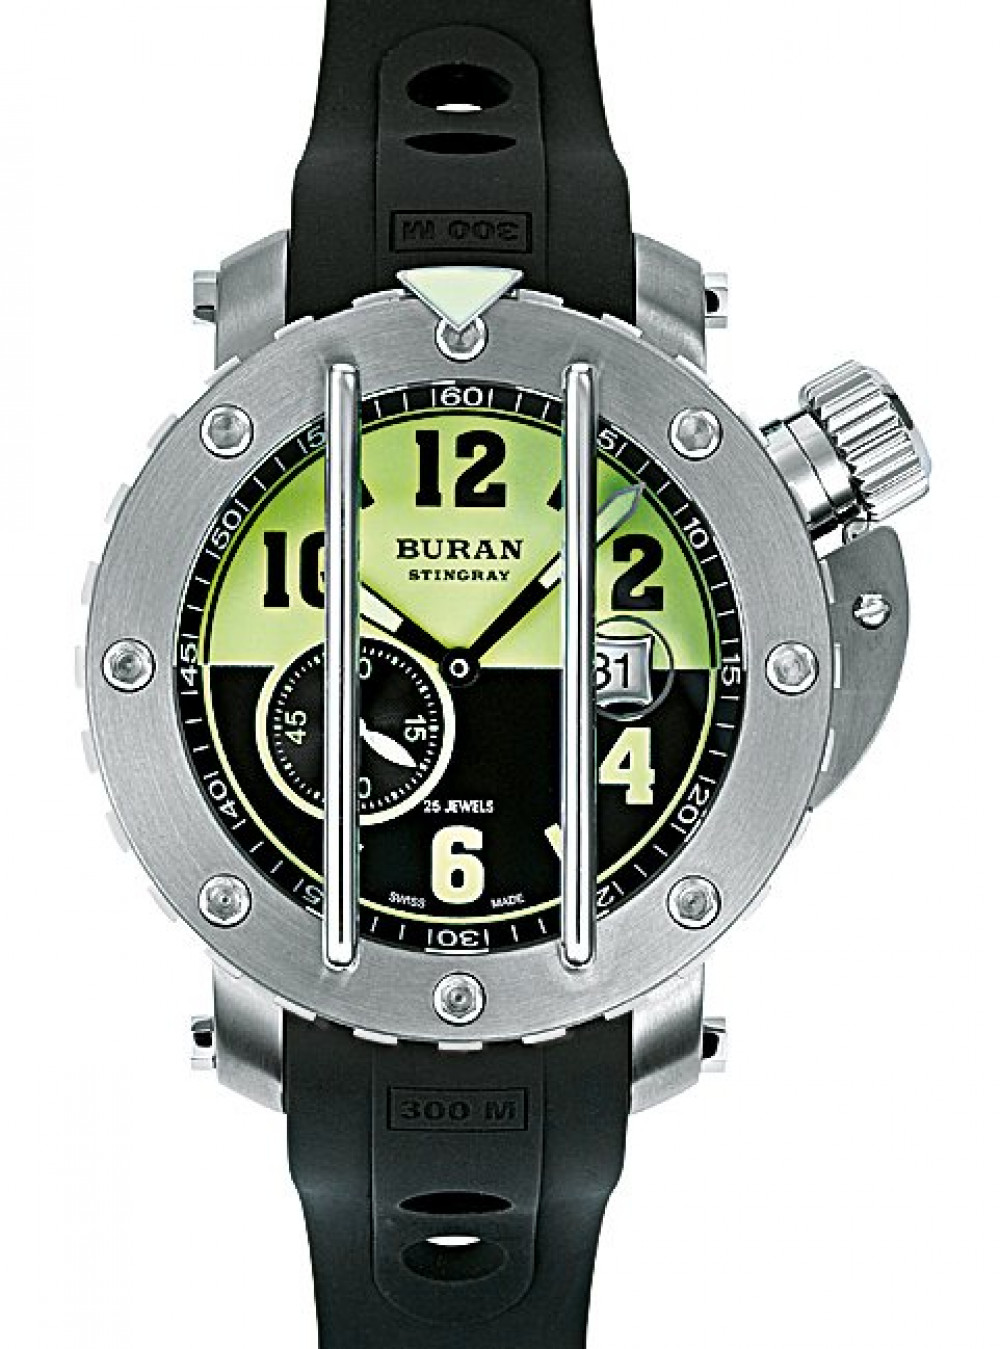 Zegarek firmy Buran Swiss made, model Buran Stingray